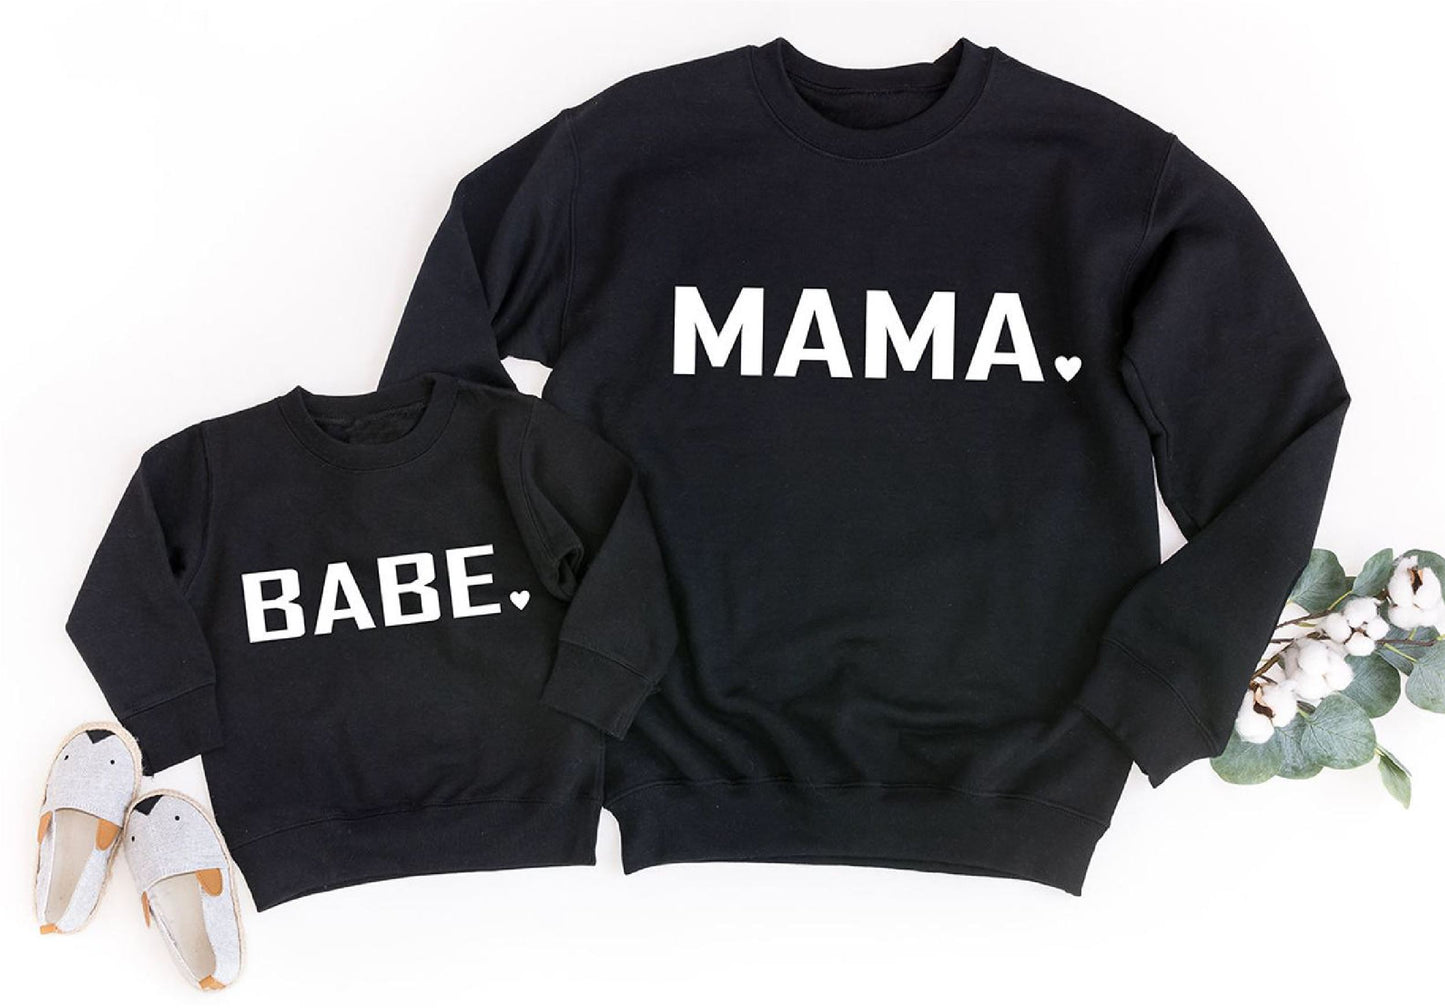 Matching Mama and Babe Black Sweatshirts